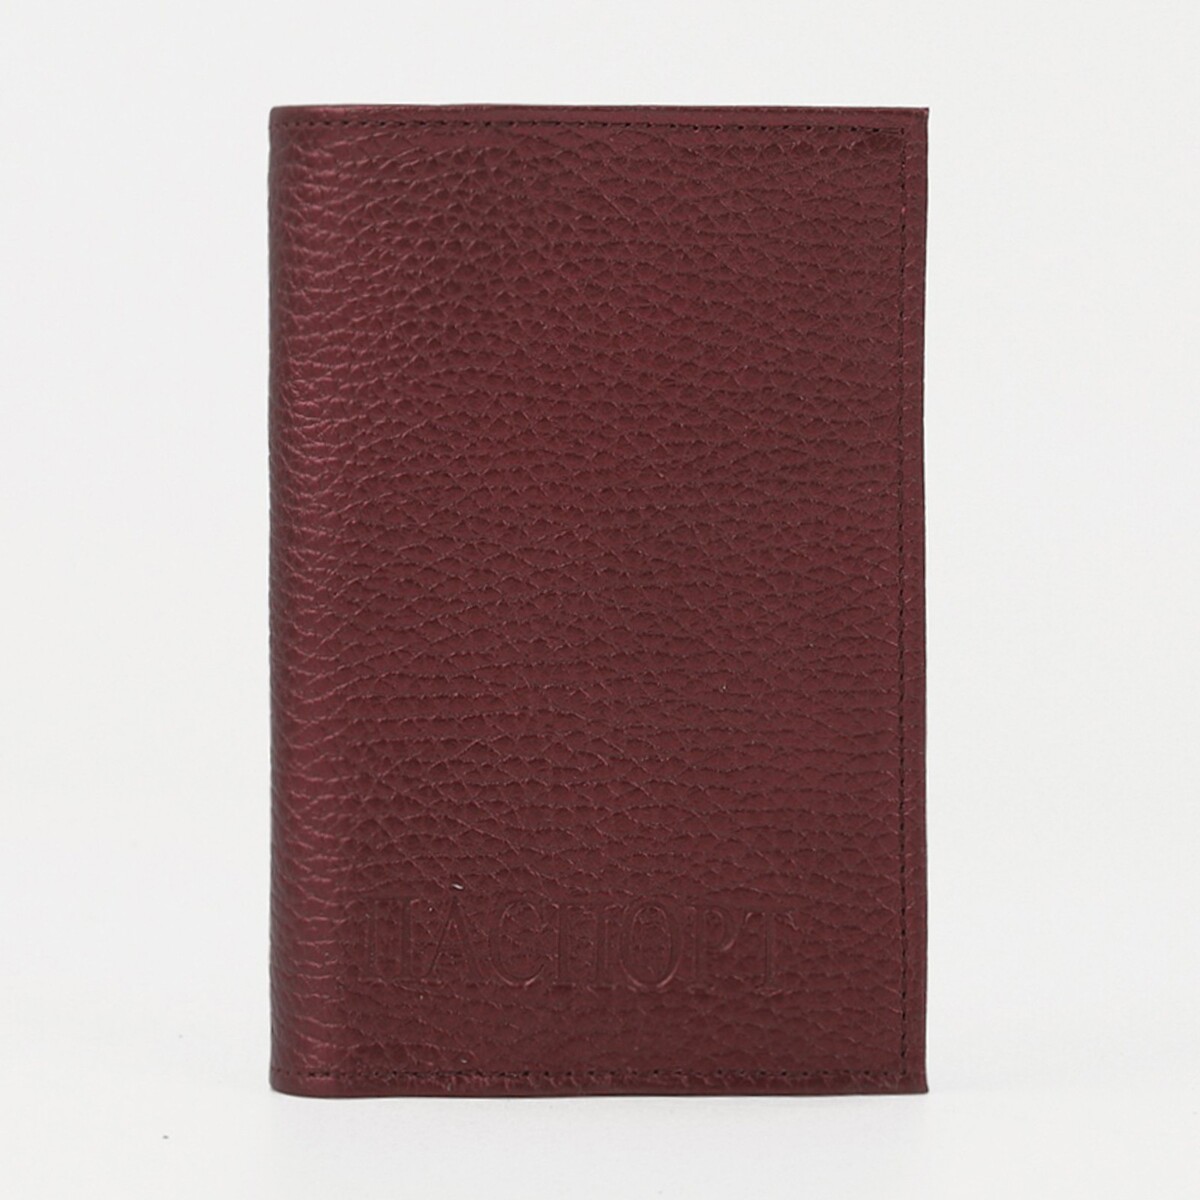 Обложка для паспорта textura, цвет бордовый обложка для паспорта textura